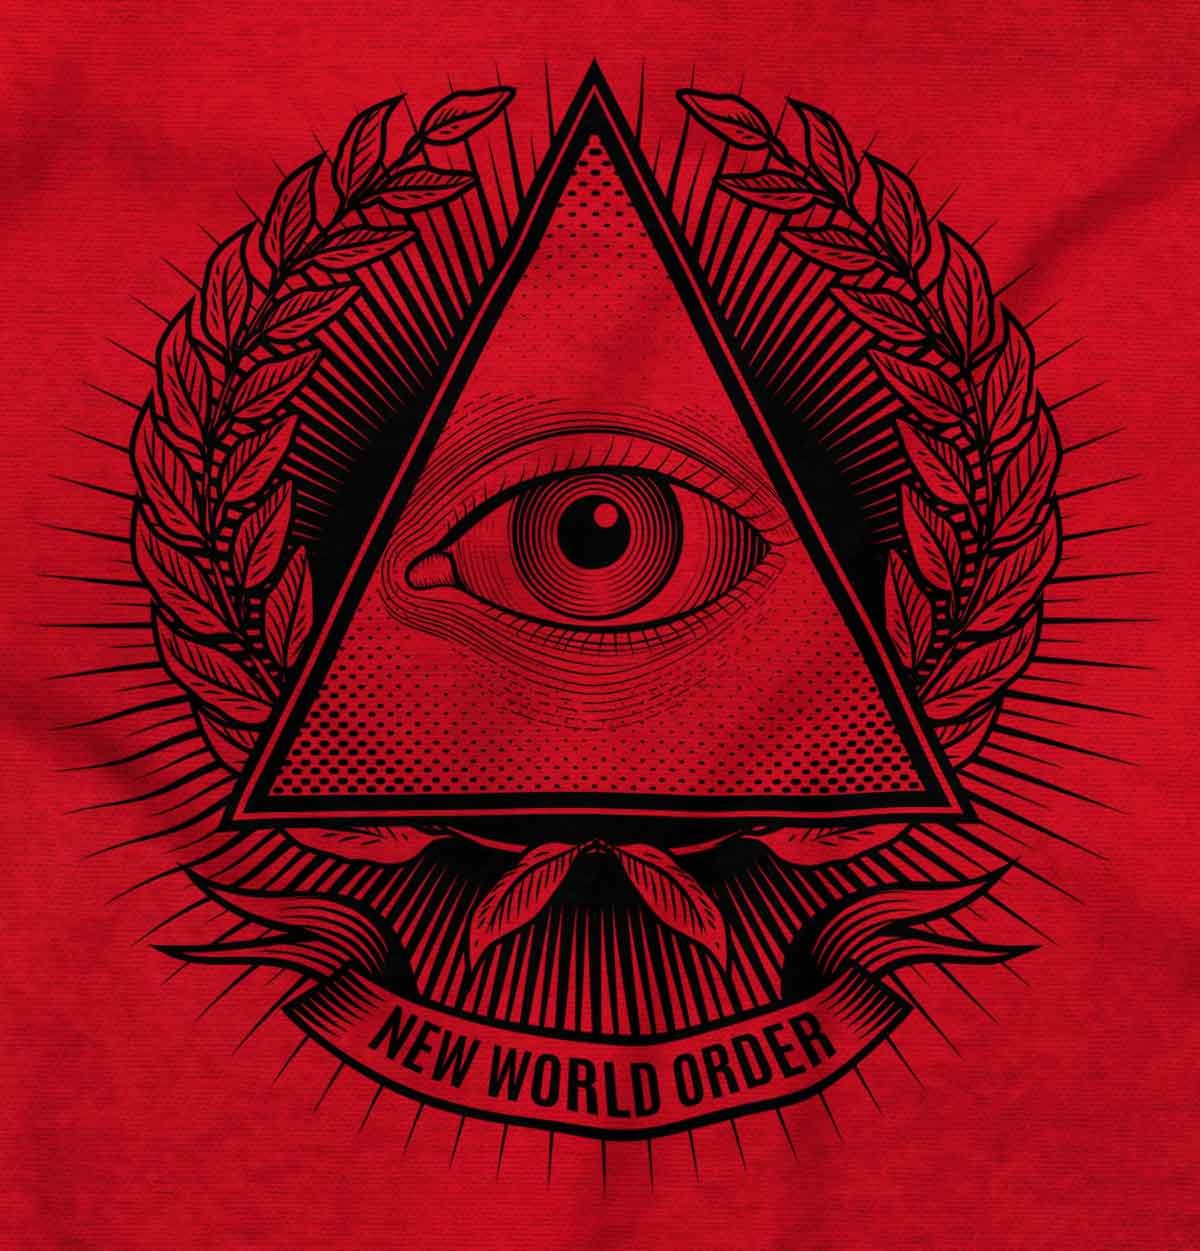 The Eye - members of the illuminati society